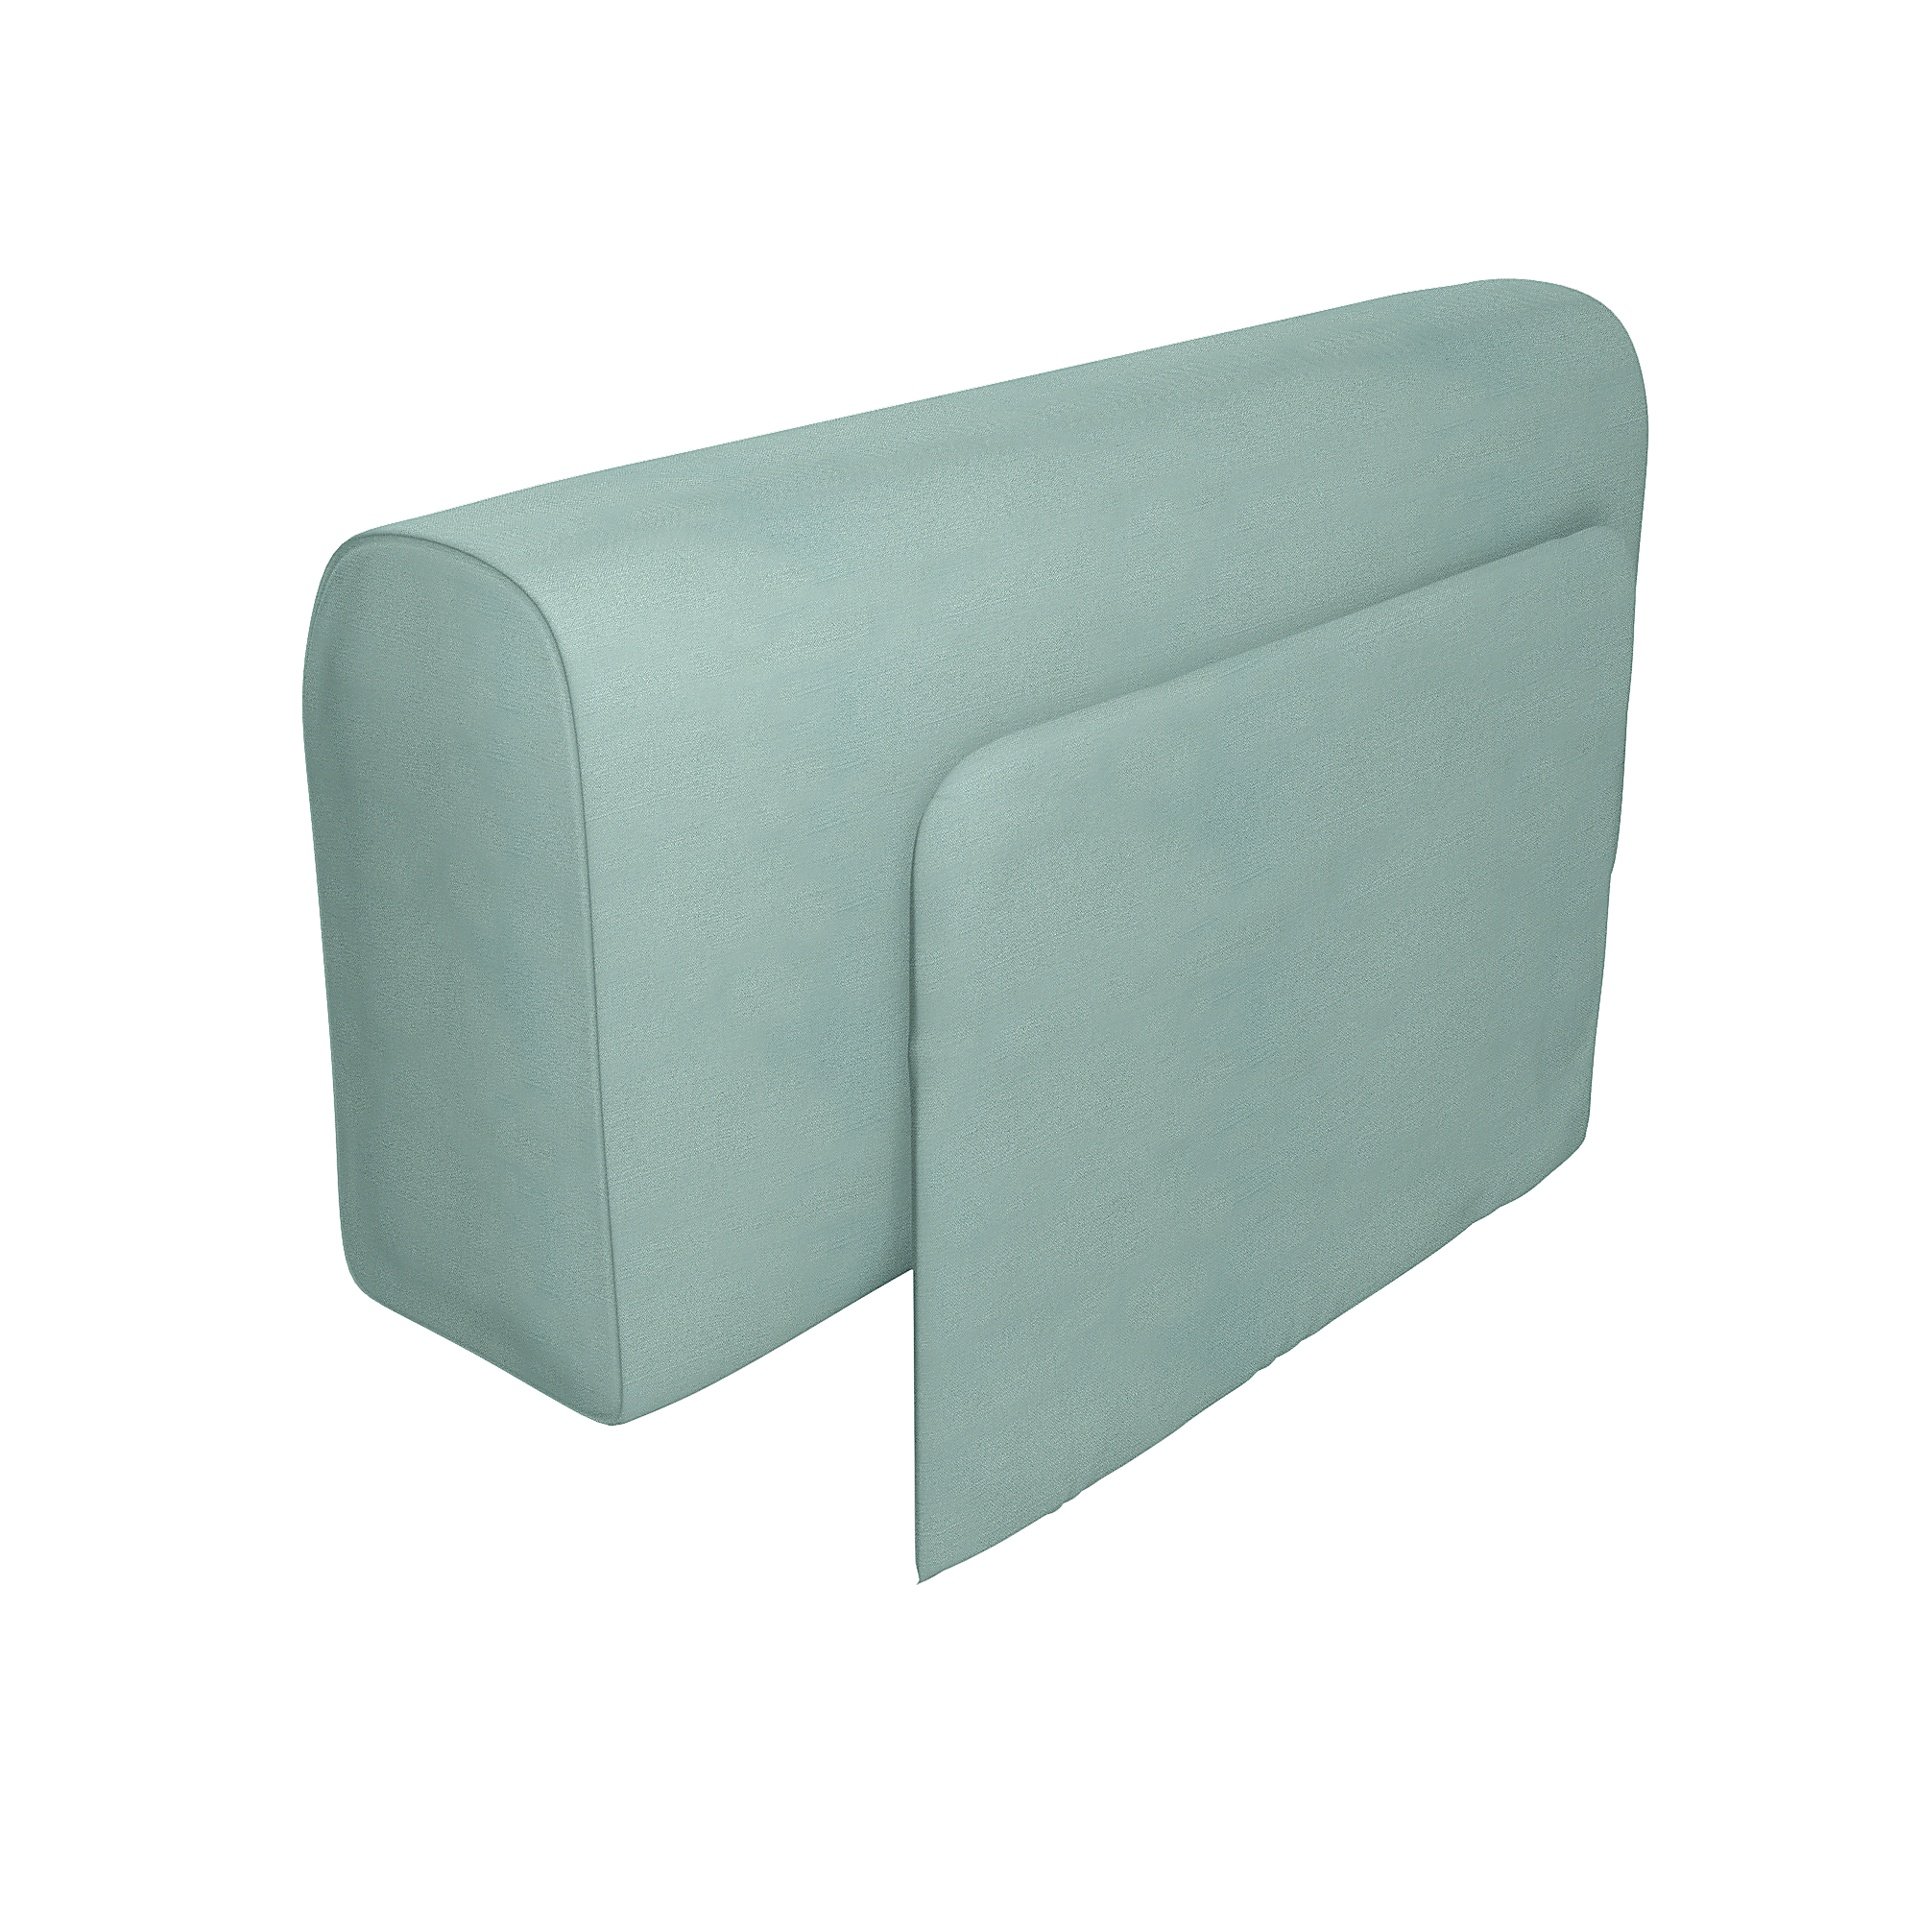 IKEA - Delaktig Armrest with Cushion Cover, Mineral Blue, Linen - Bemz